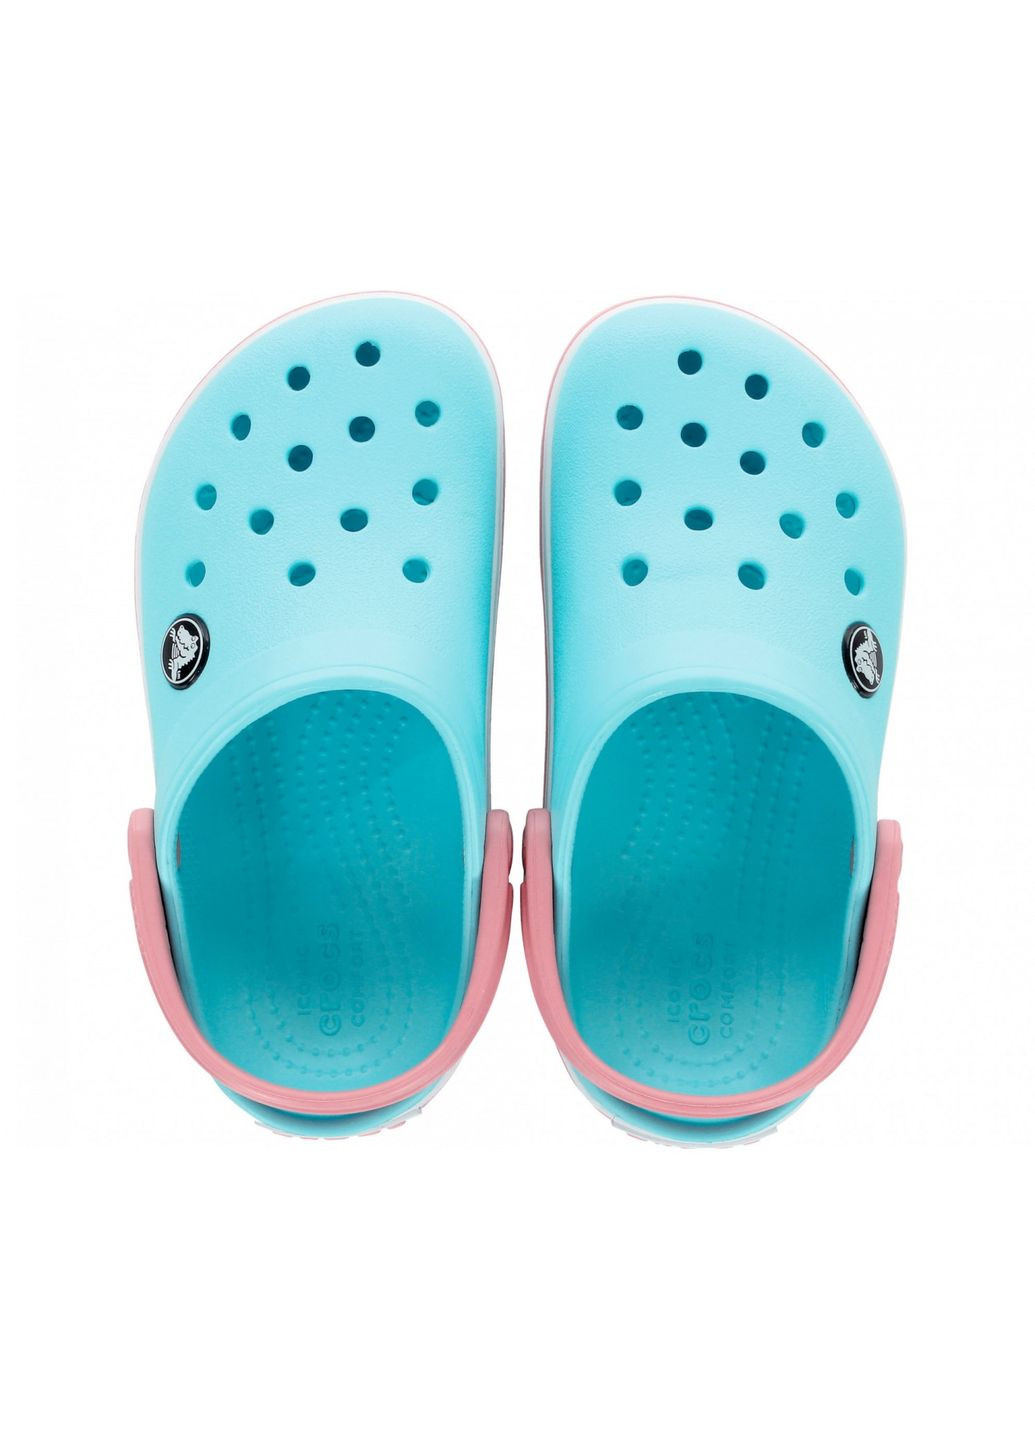 Голубые кроксы kids crocband clog ice blue j1-32.5-20.5 см 204537 Crocs